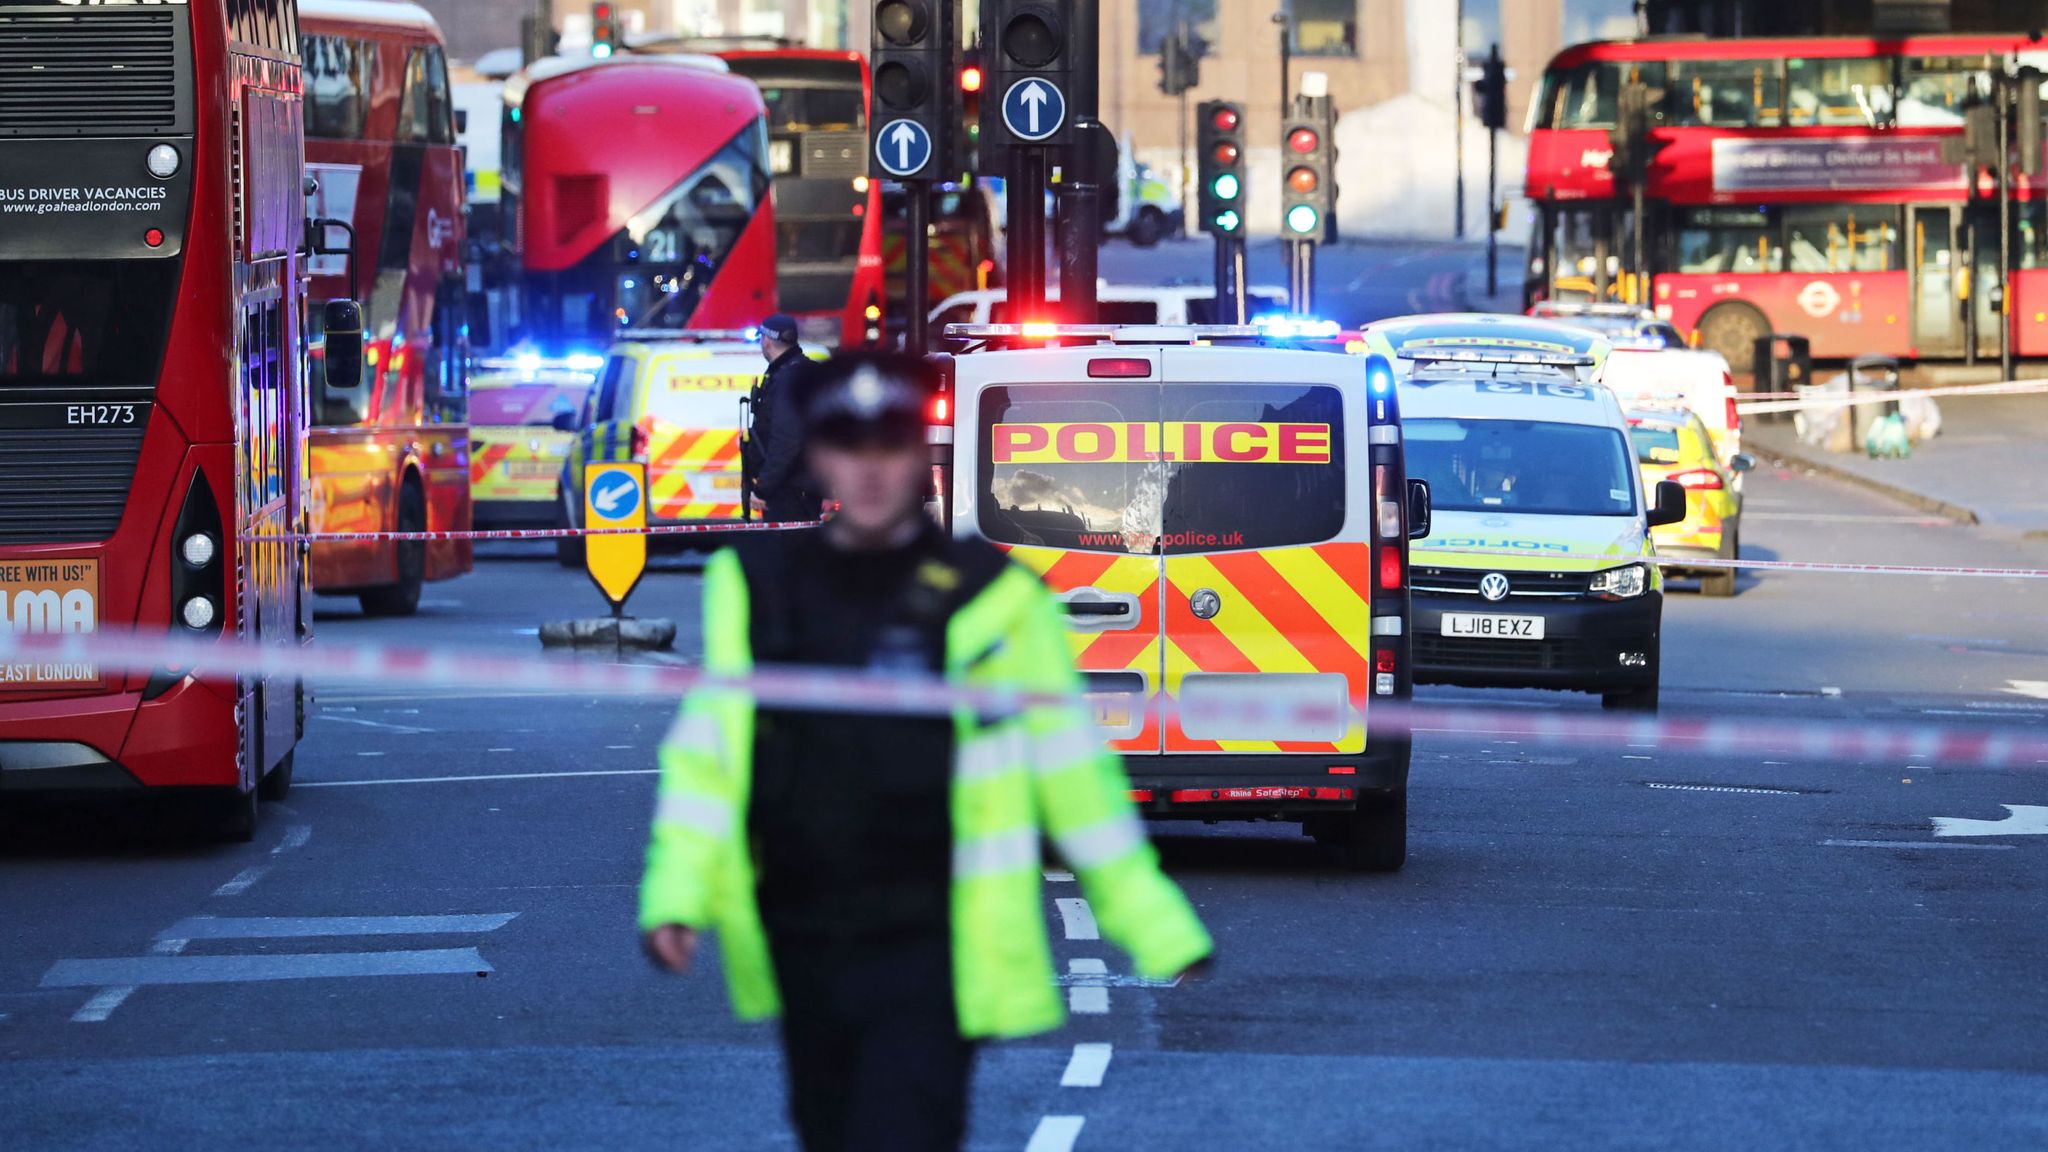 مكافحة الإرهاب في بريطانيا، ثغرات أمنية في متابعة المتطرفين